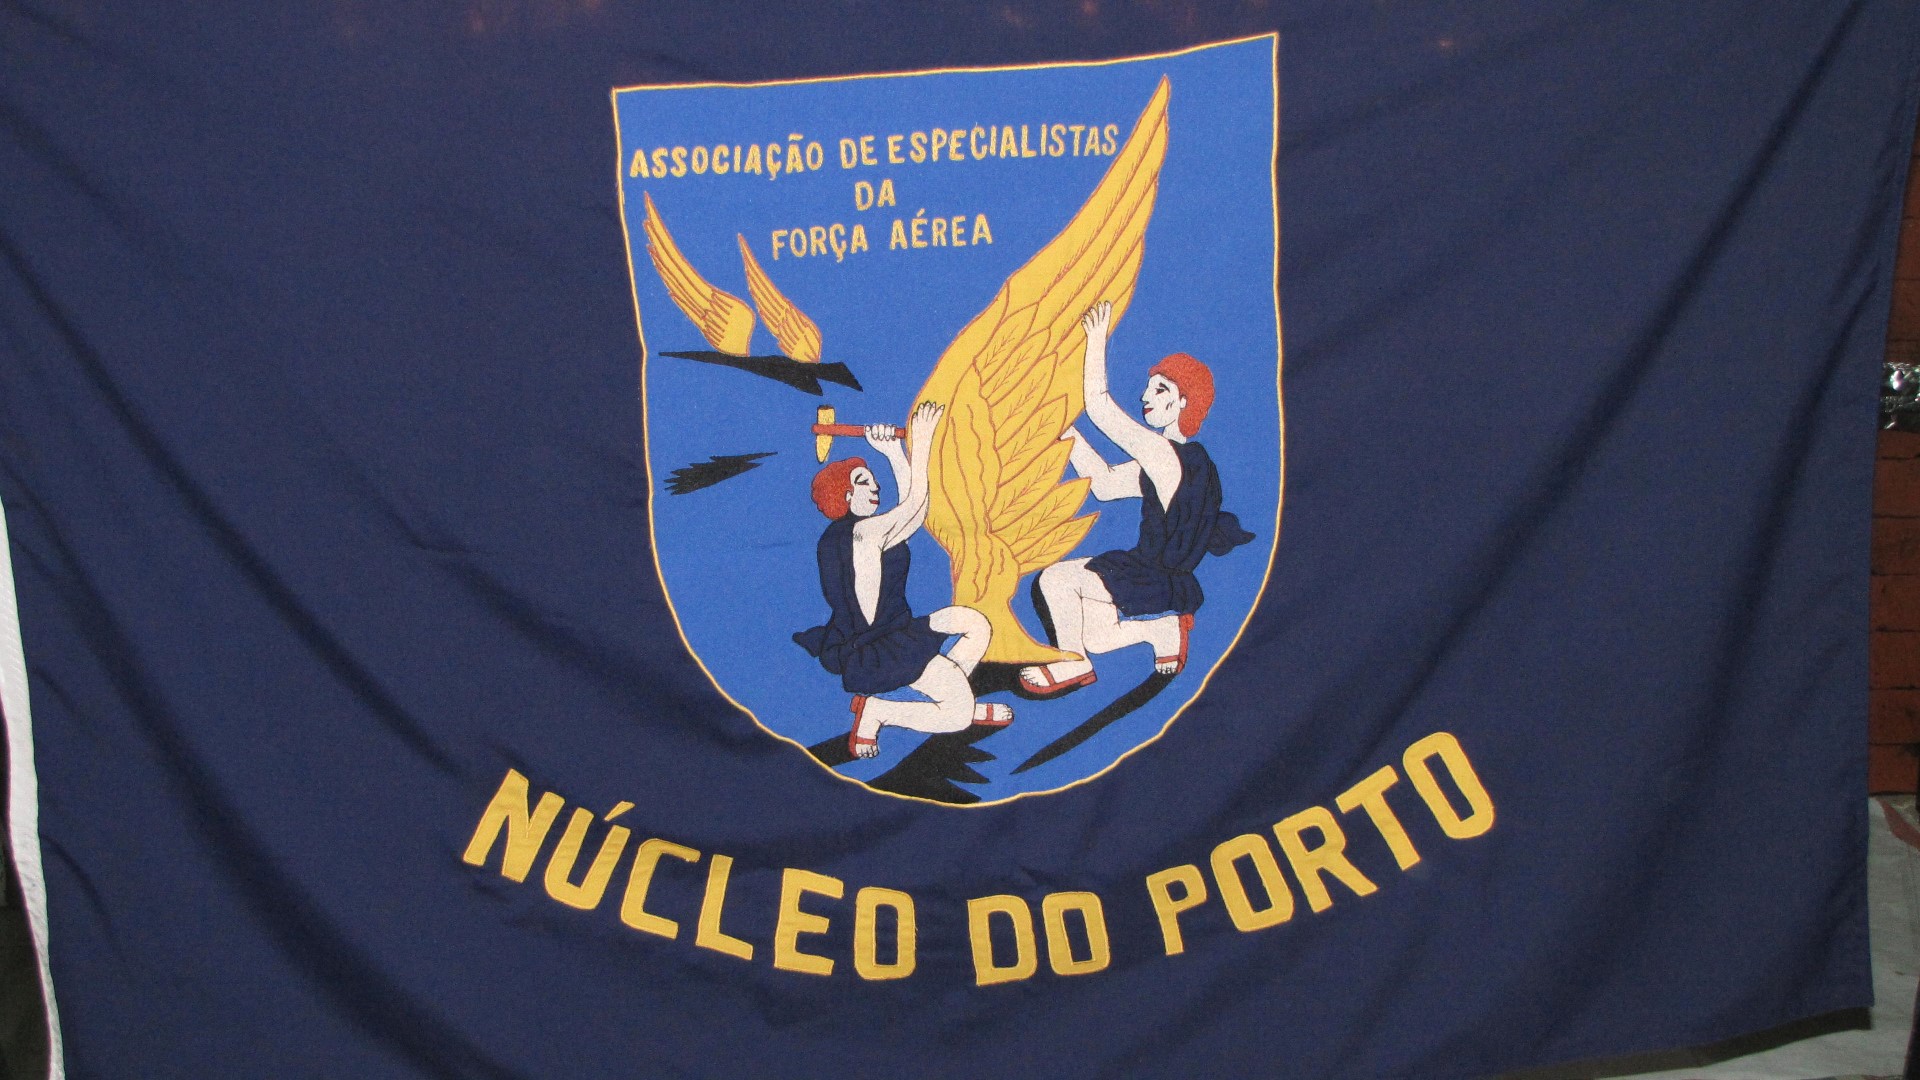 AEFA - Ncleo do Porto